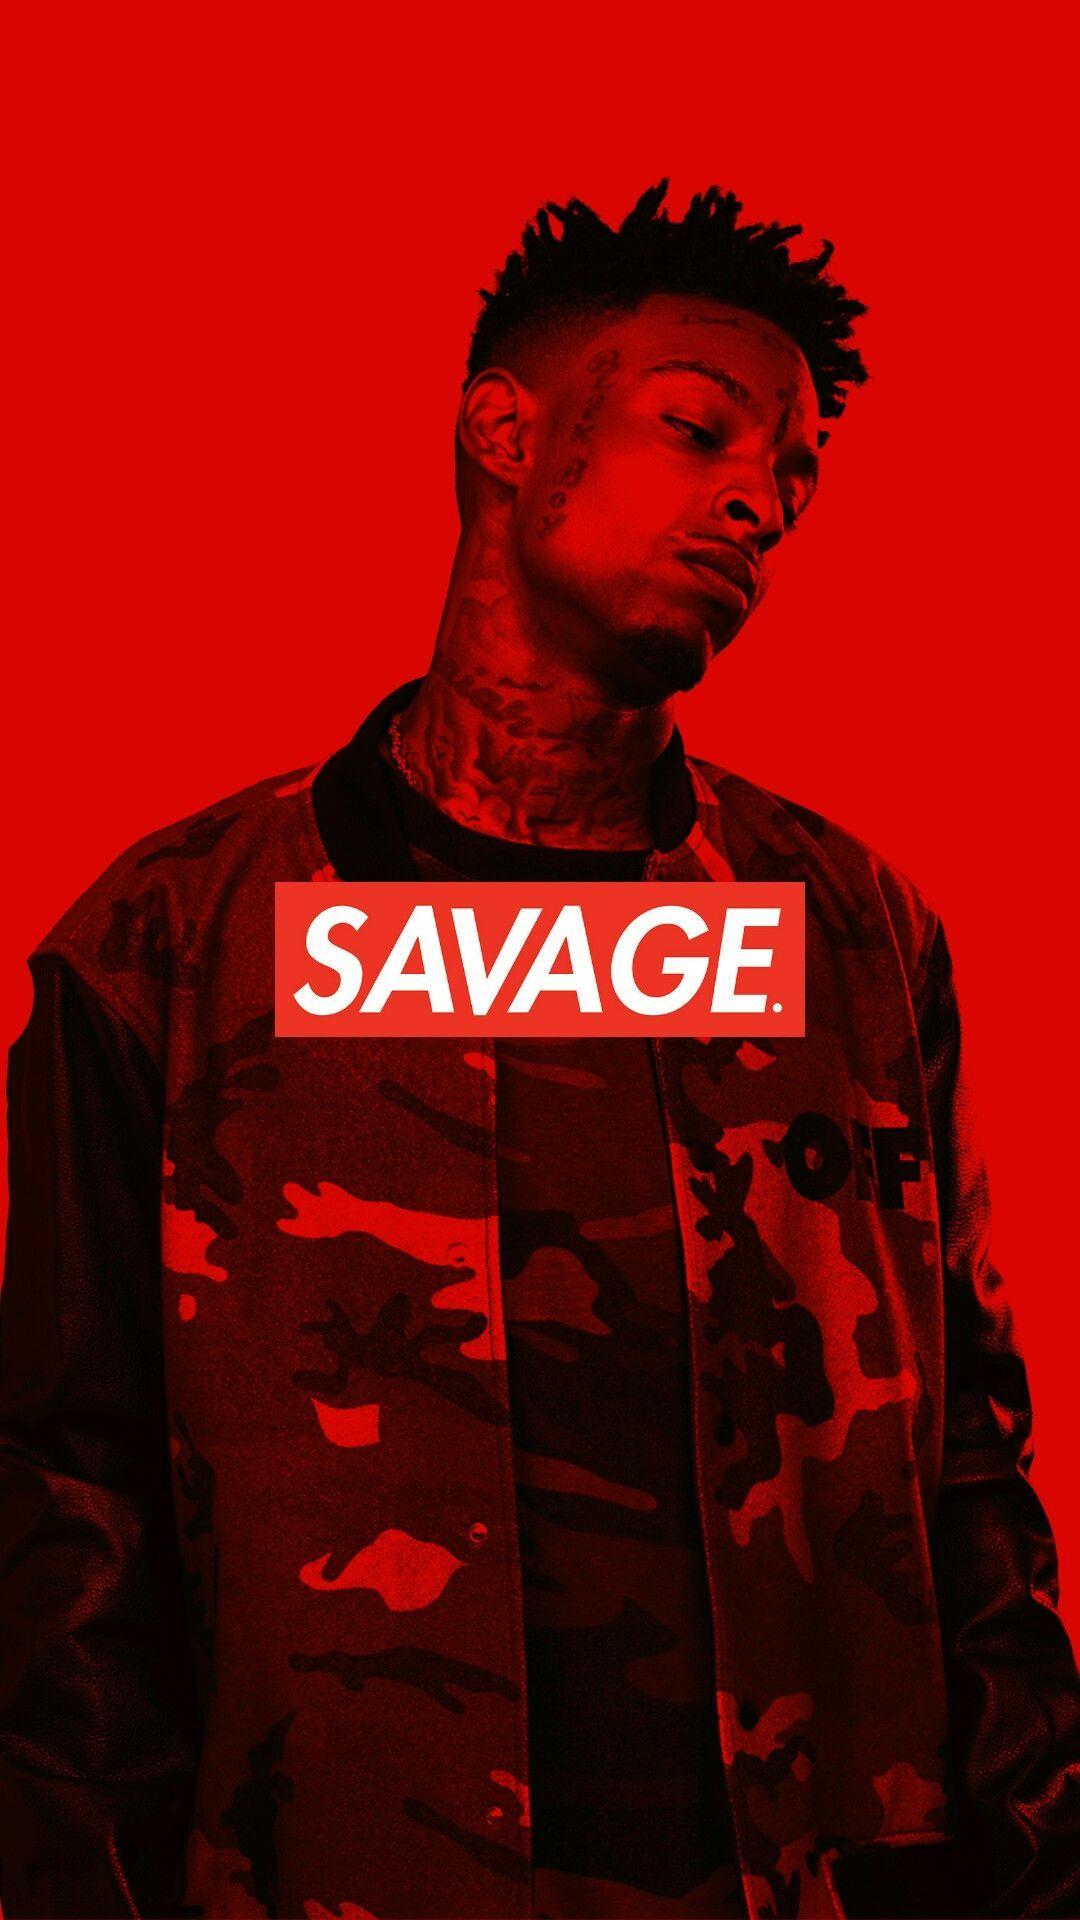 Red Savage Logo - 21 Savage IPhone Wallpaper Savage box logo | IPhone Wallpapers ...